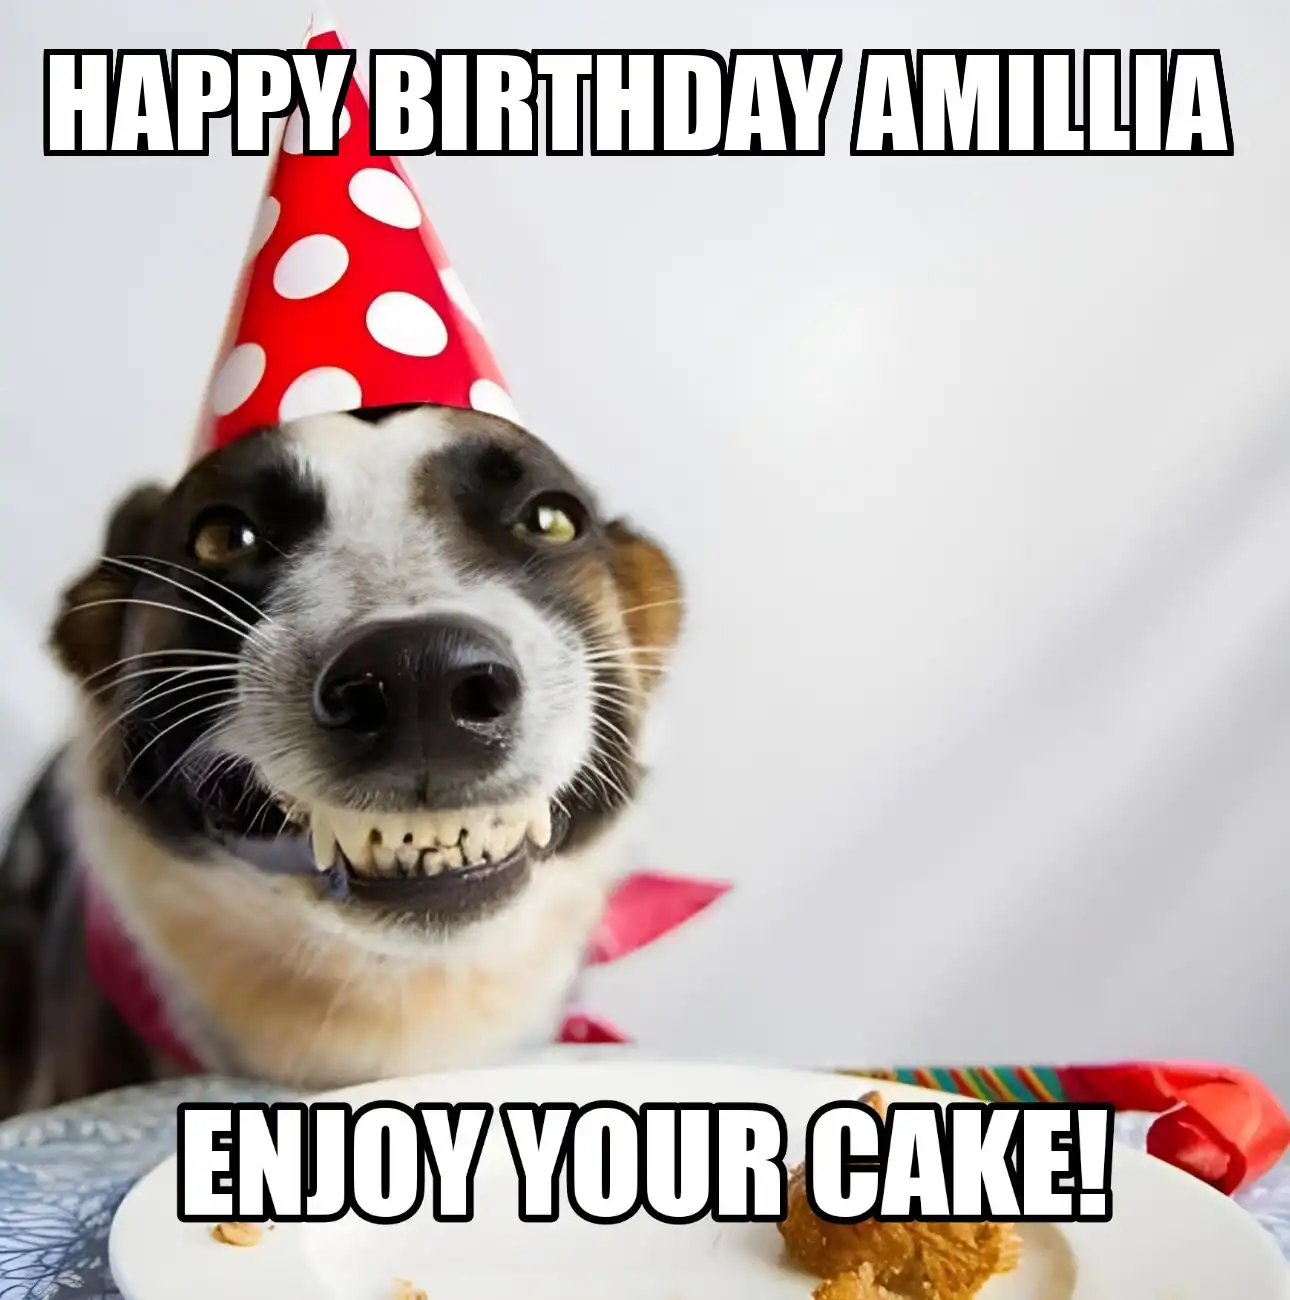 Happy Birthday Amillia Enjoy Your Cake Dog Meme